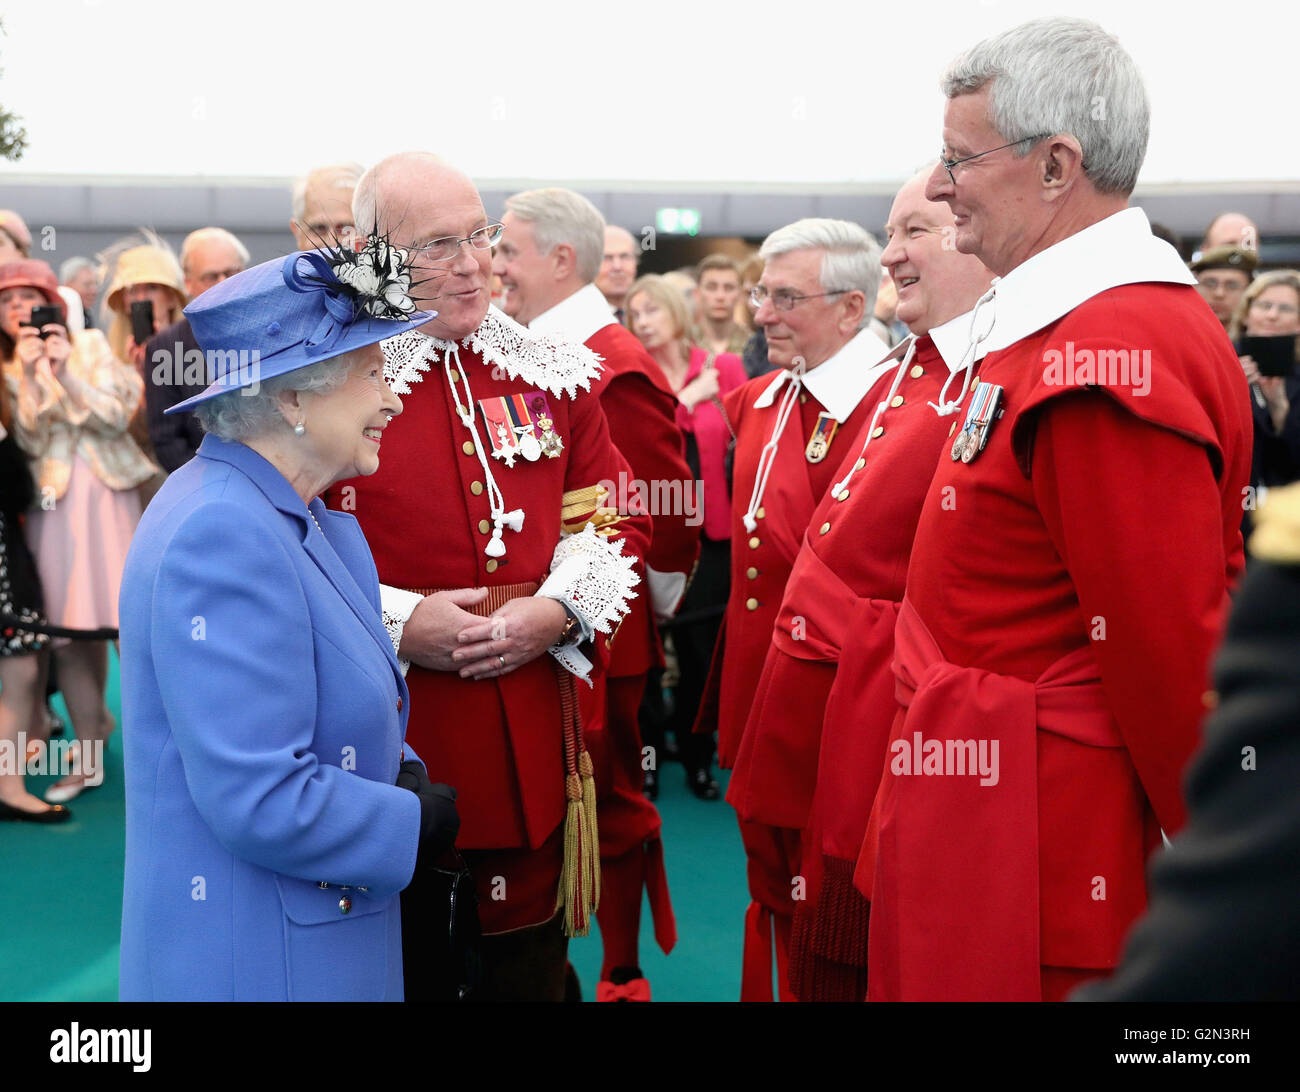 La reine Elizabeth II pour chats pike-hommes lors d'une visite à l'Honorable Artillery Company à Londres, au cours de laquelle un buste en bronze d'elle-même a été dévoilée afin de célébrer le monarque le plus ancien capitaine général de devenir l'unité militaire. Banque D'Images